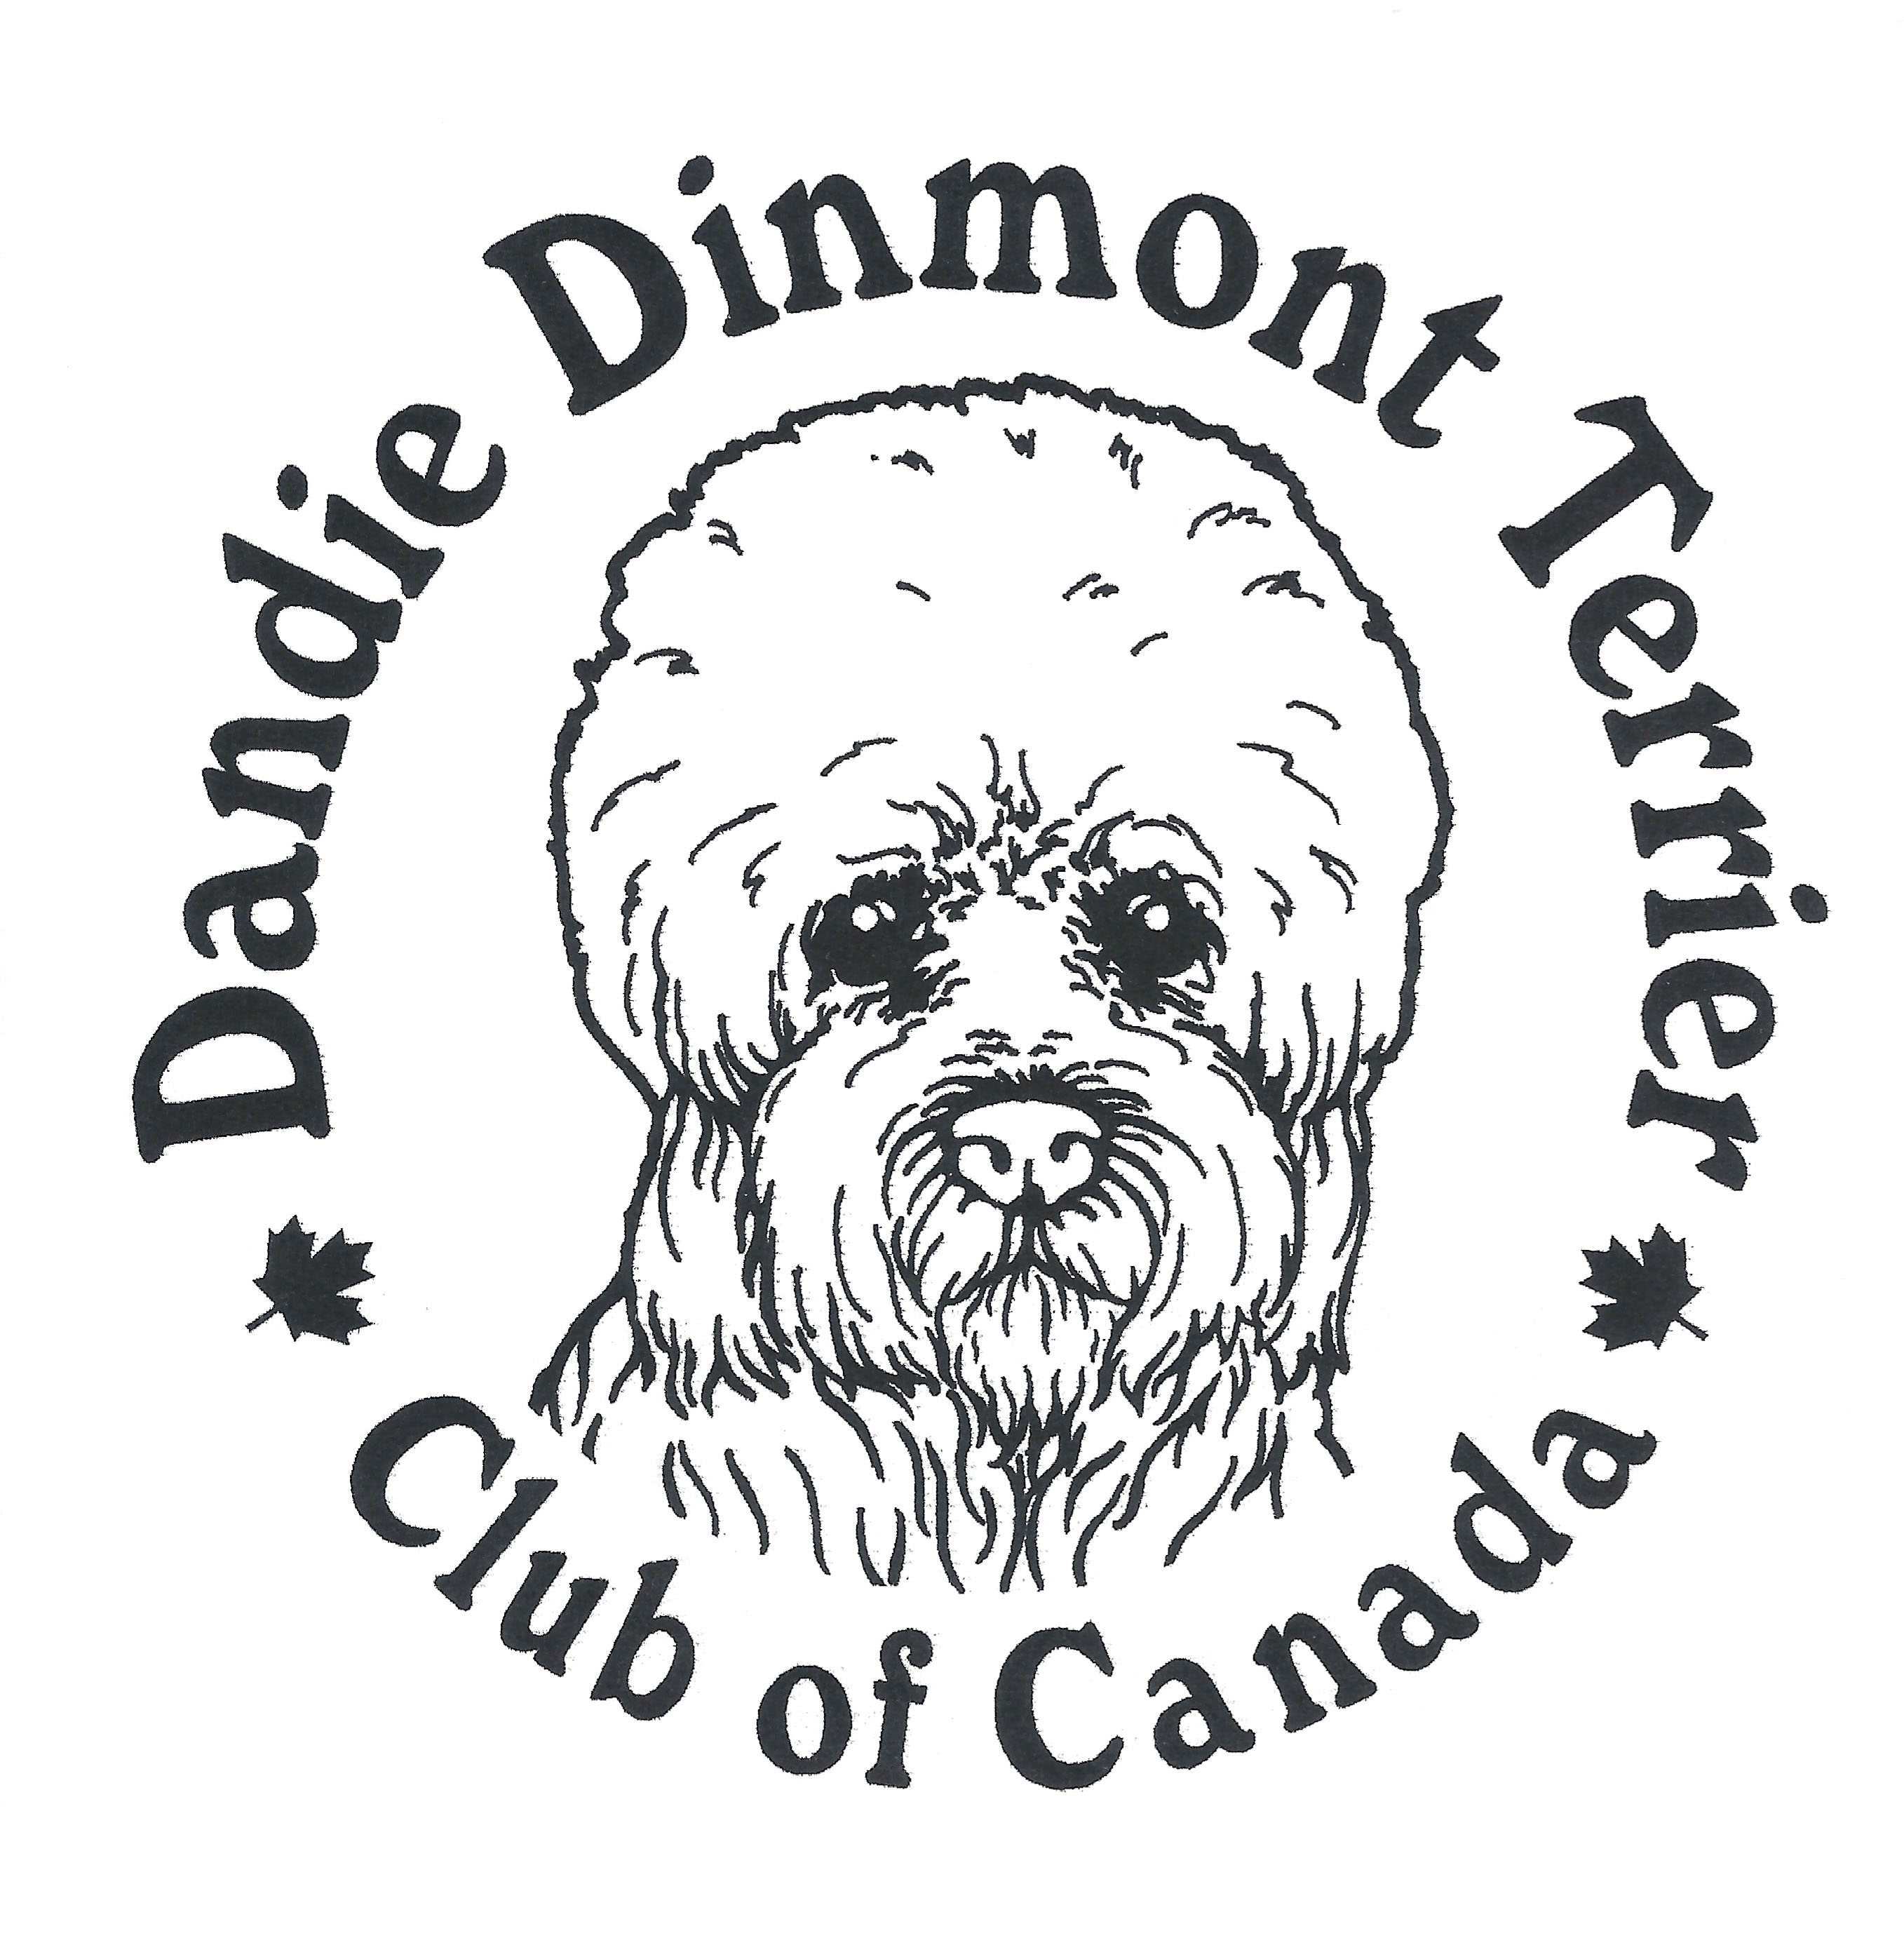 Dandie Dinmont Terrier Club of Canada